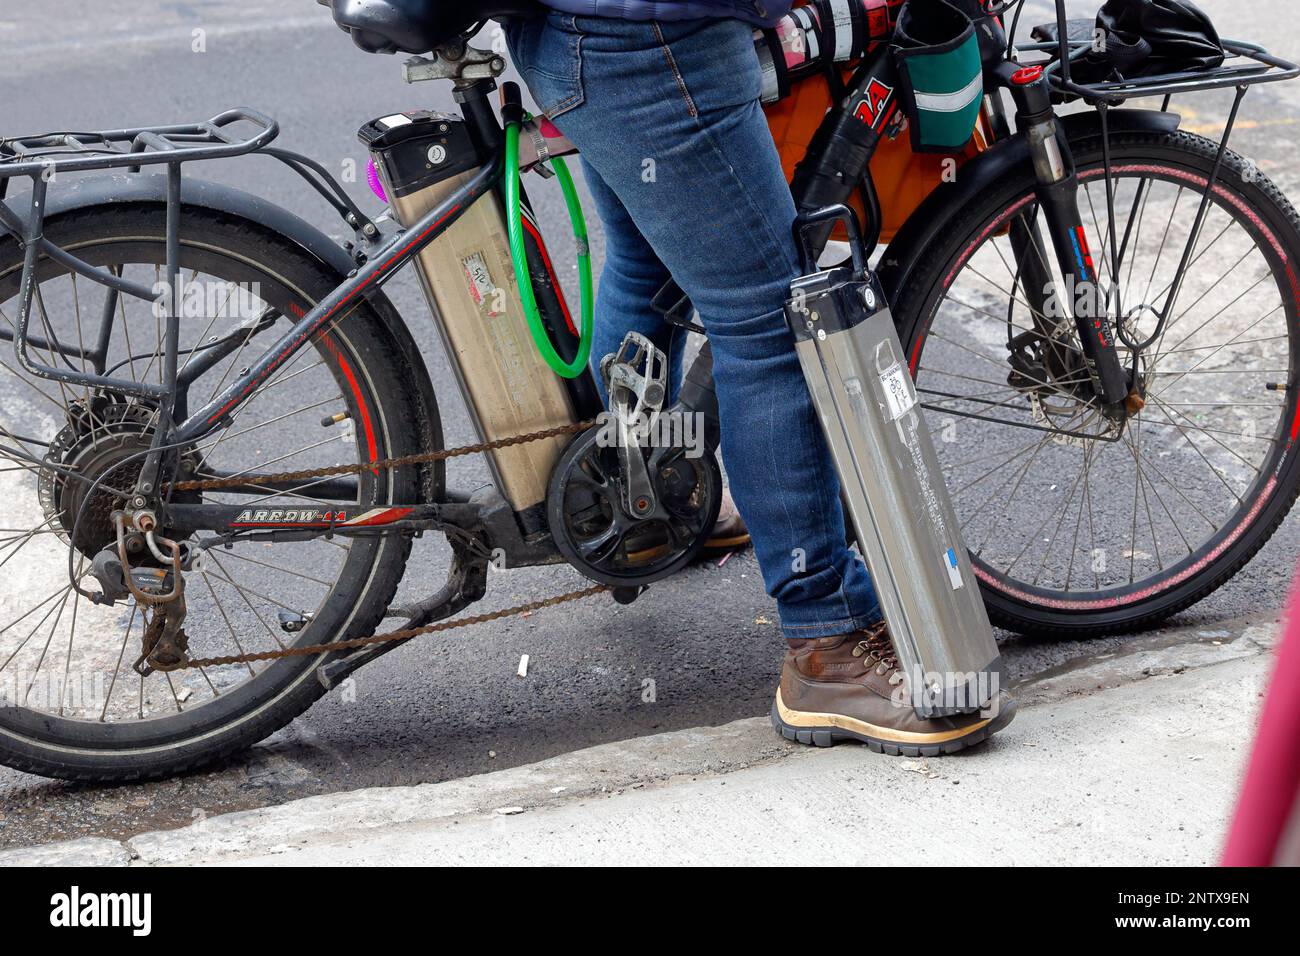 Batterie e-bike agli ioni di litio trasportate da un messaggero per la consegna degli alimenti; una sulla bici elettrica e una batteria di riserva al suo piede. Foto Stock